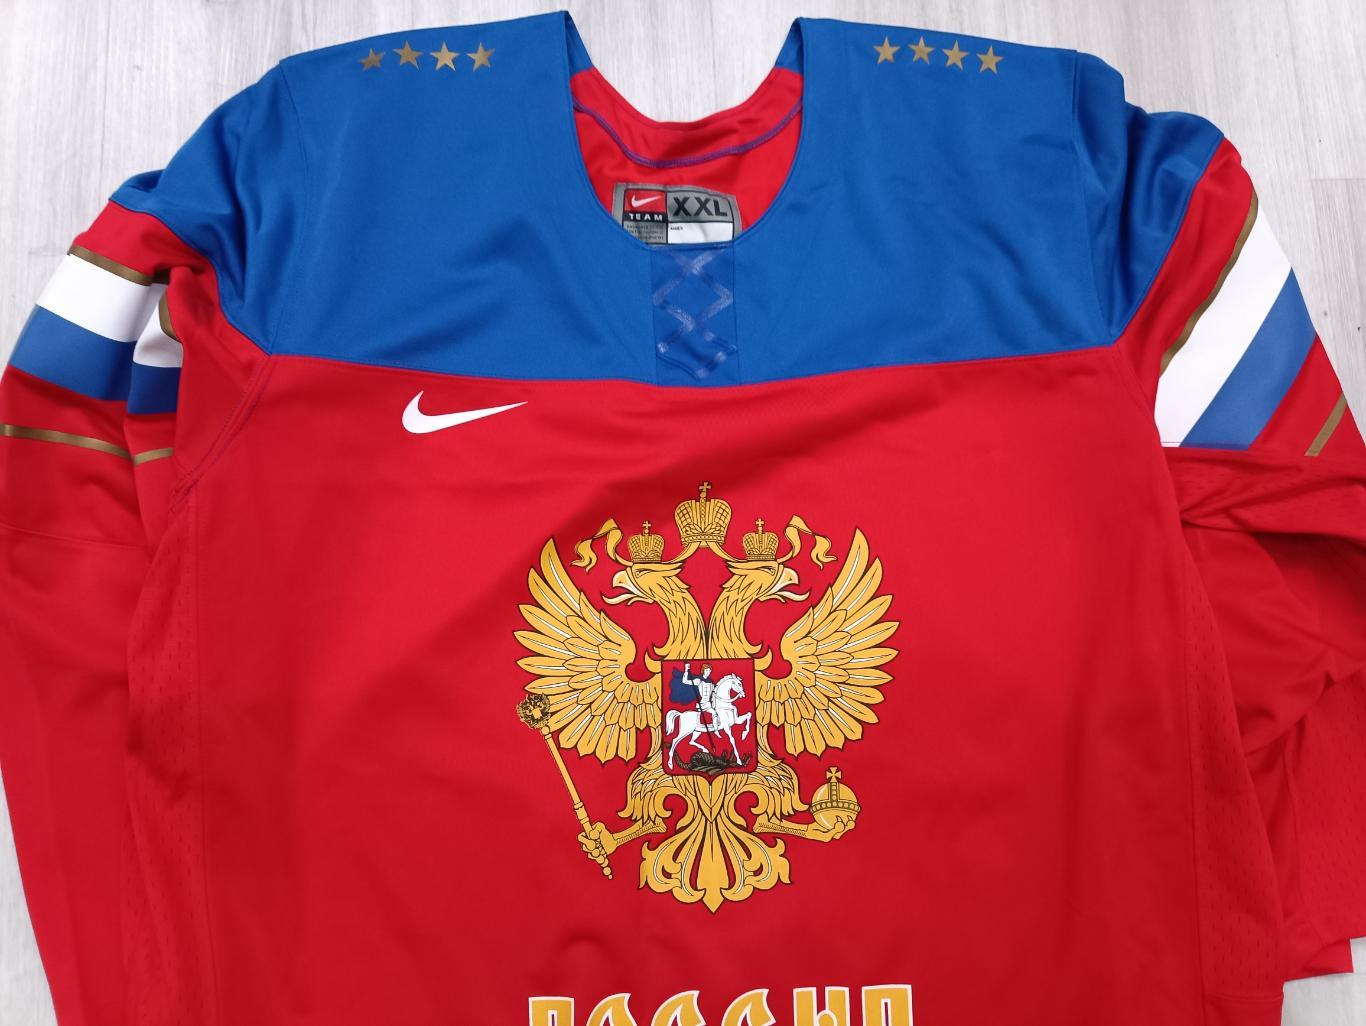 фанатский хоккейный свитер сборной России